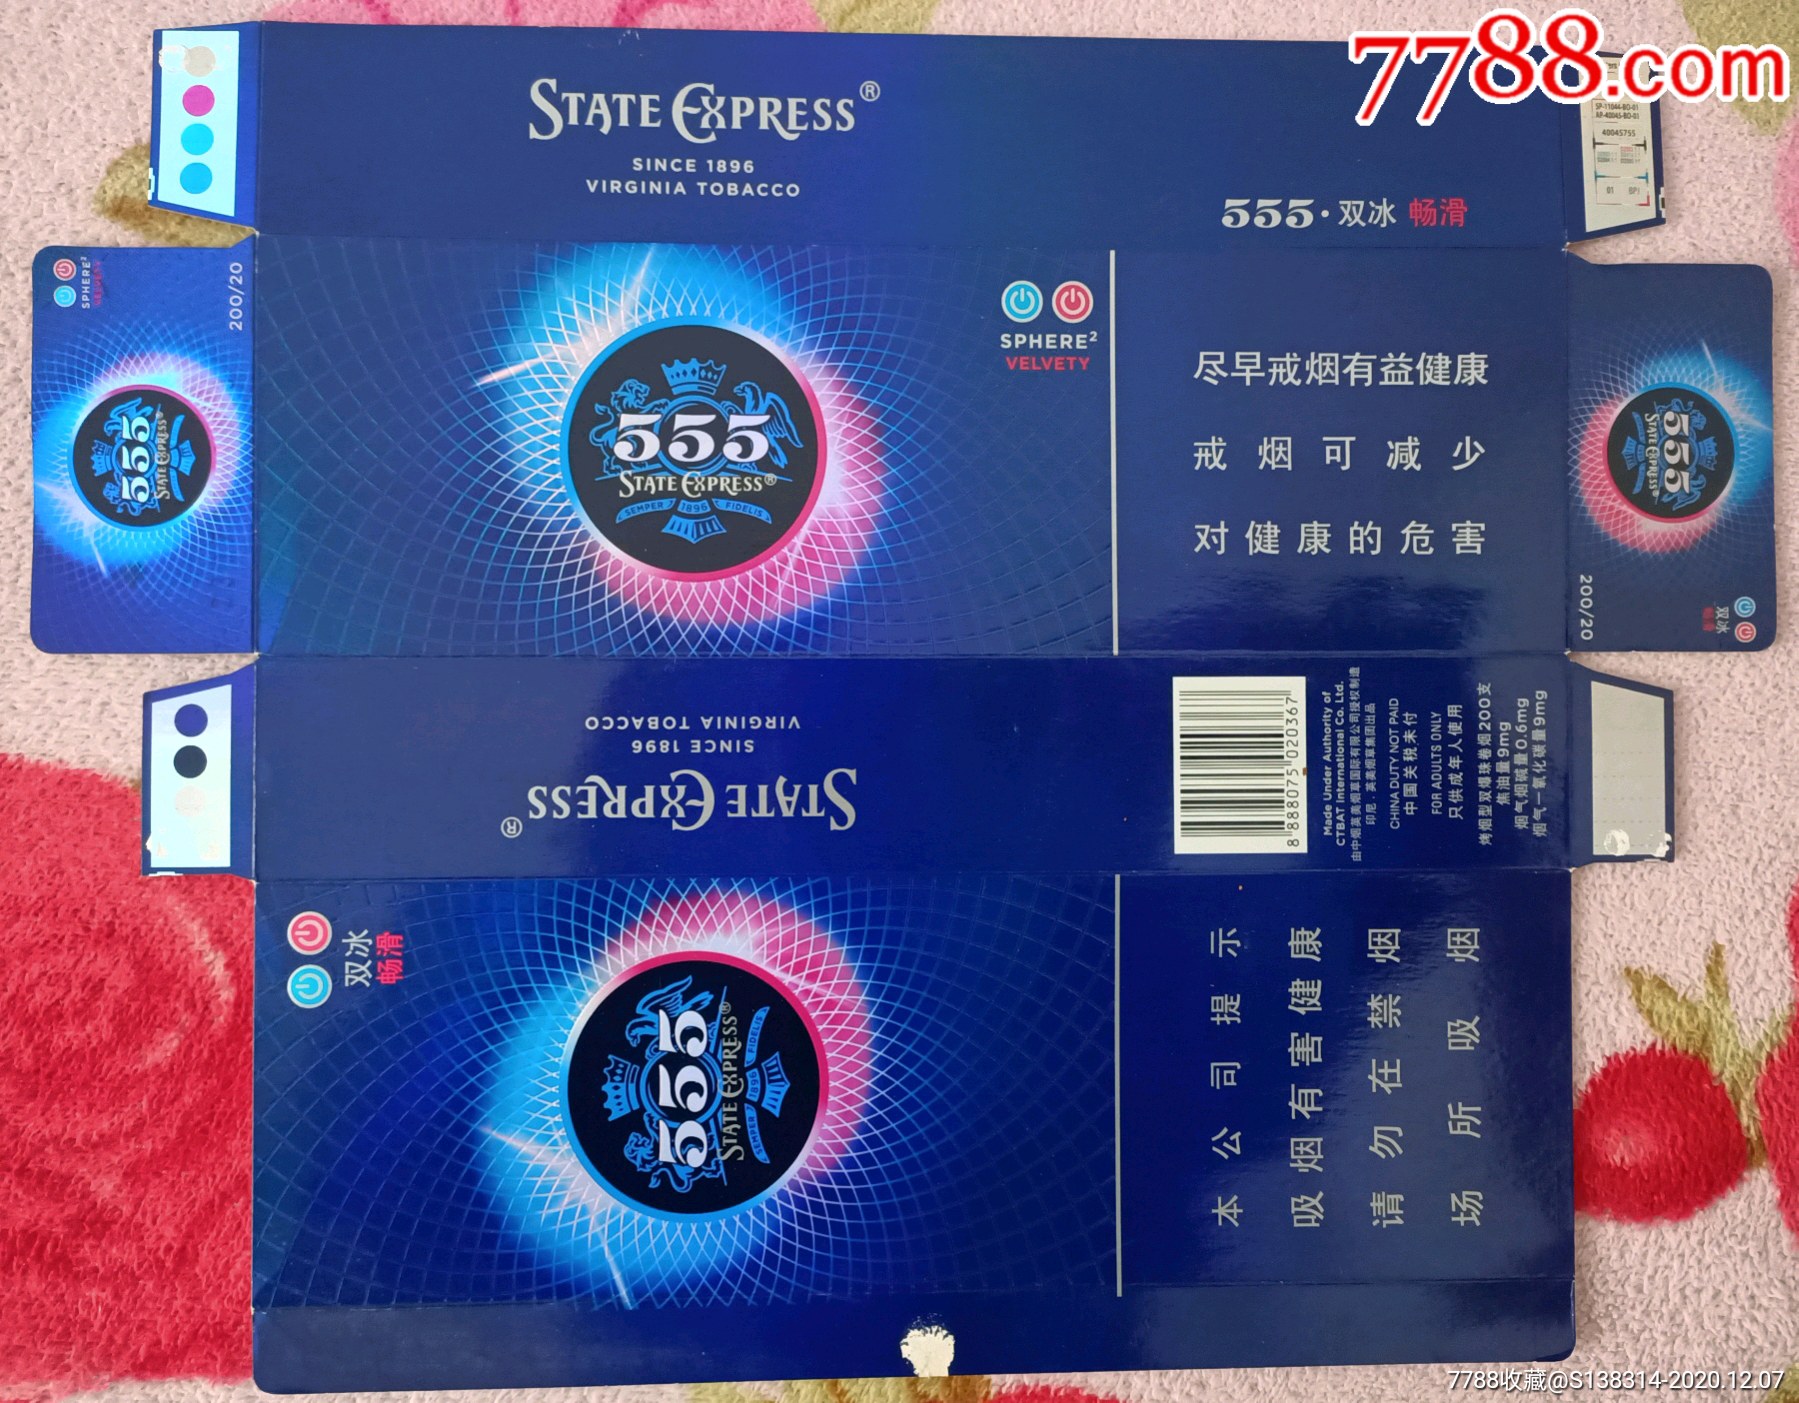 蓝盒555价格表和图片图片